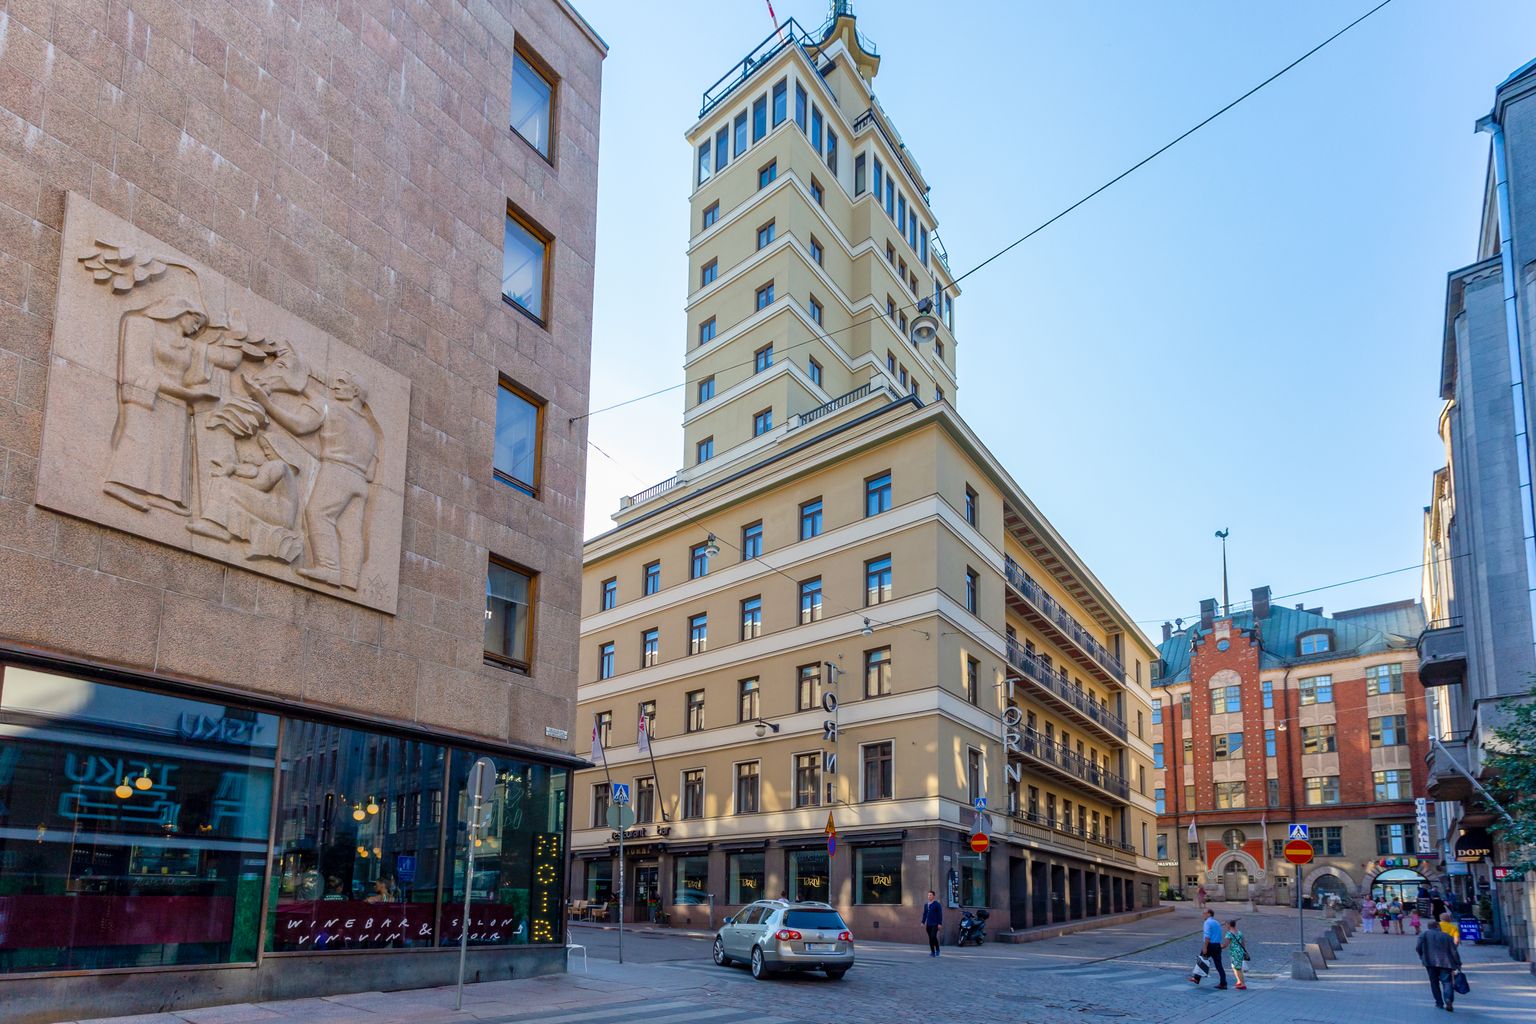 Soome Helsingi hotell Torni, mis avati 1931 ja oli kuni 1976. aastani Soome kõrgeim ehitis